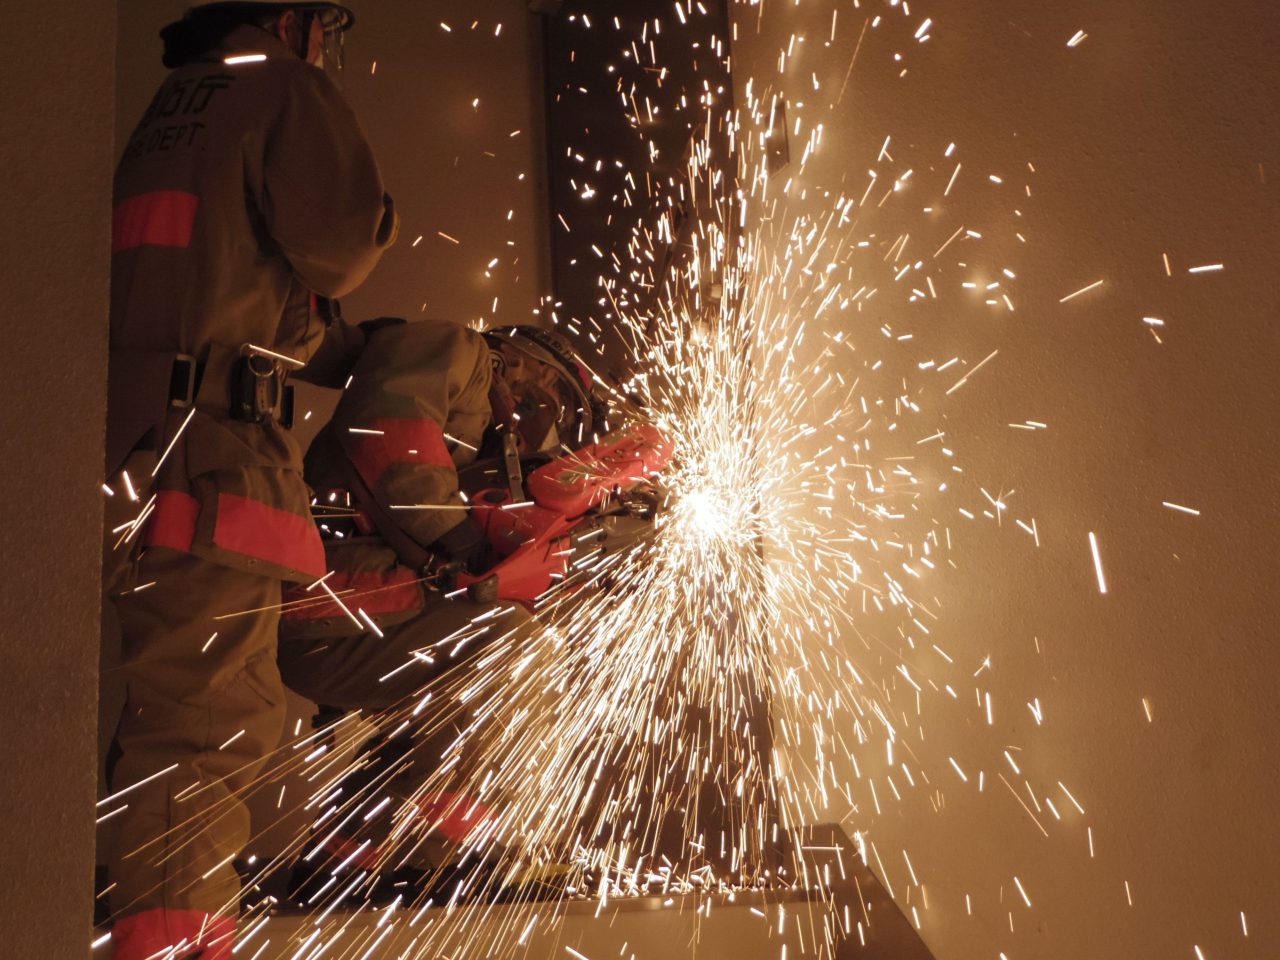 ドア開放技術などをベテラン職員から学ぶ<br>東京消防庁四谷消防署が消防破壊訓練